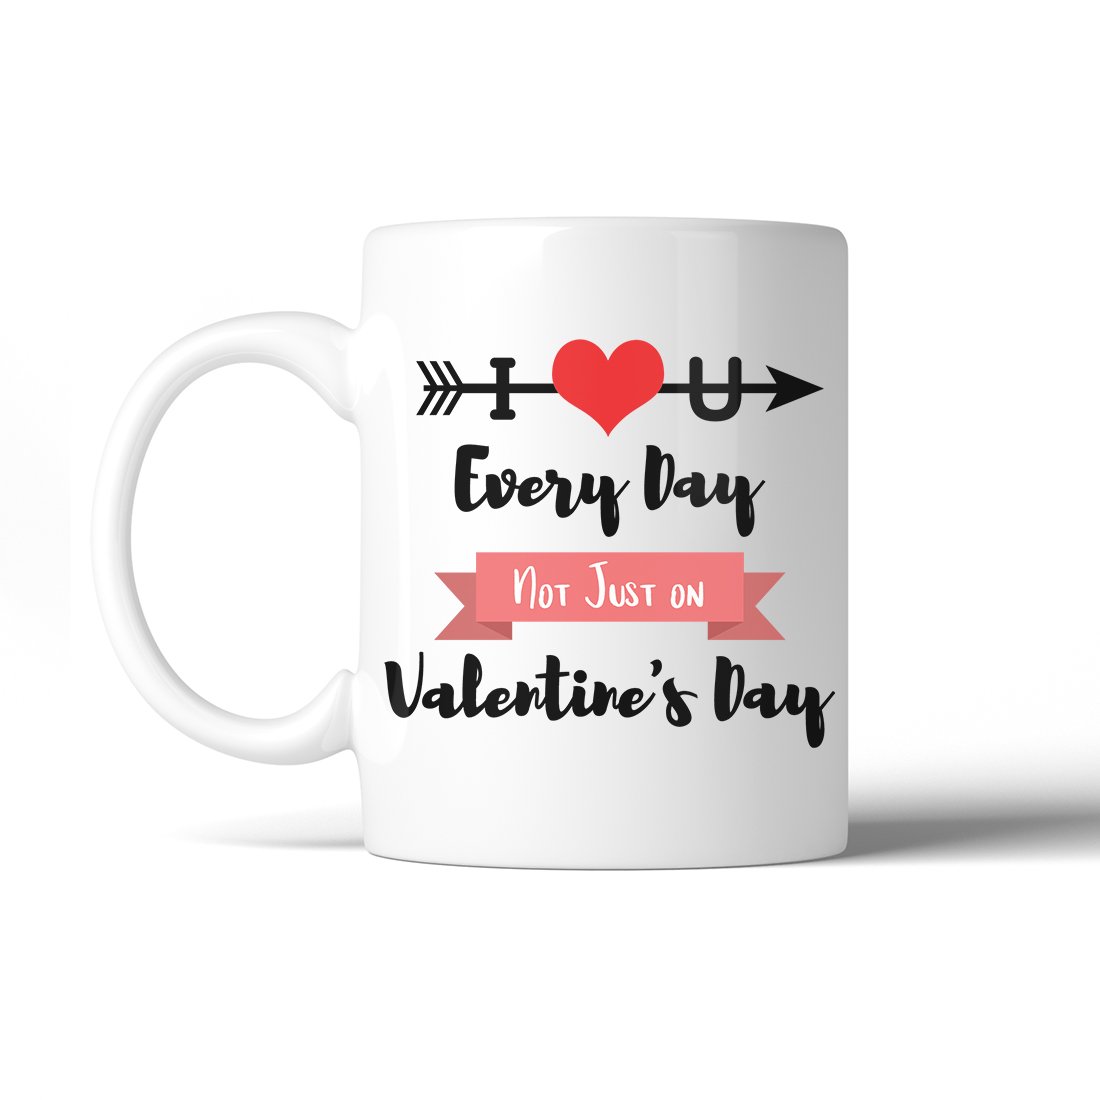 Mug personnalisé pour la Saint Valentin.